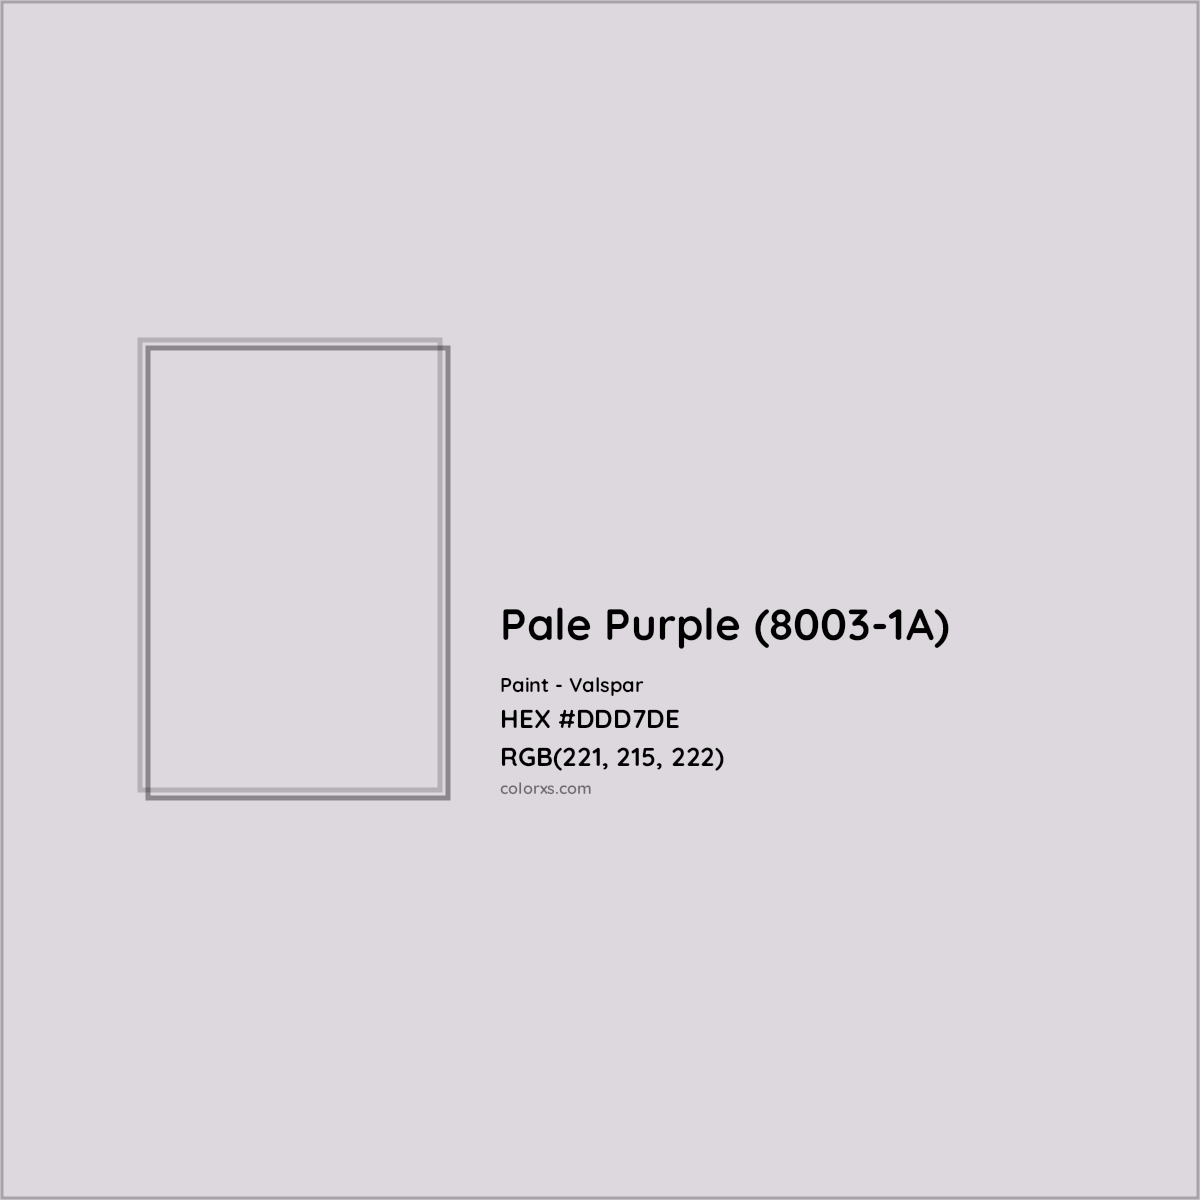 HEX #DDD7DE Pale Purple (8003-1A) Paint Valspar - Color Code